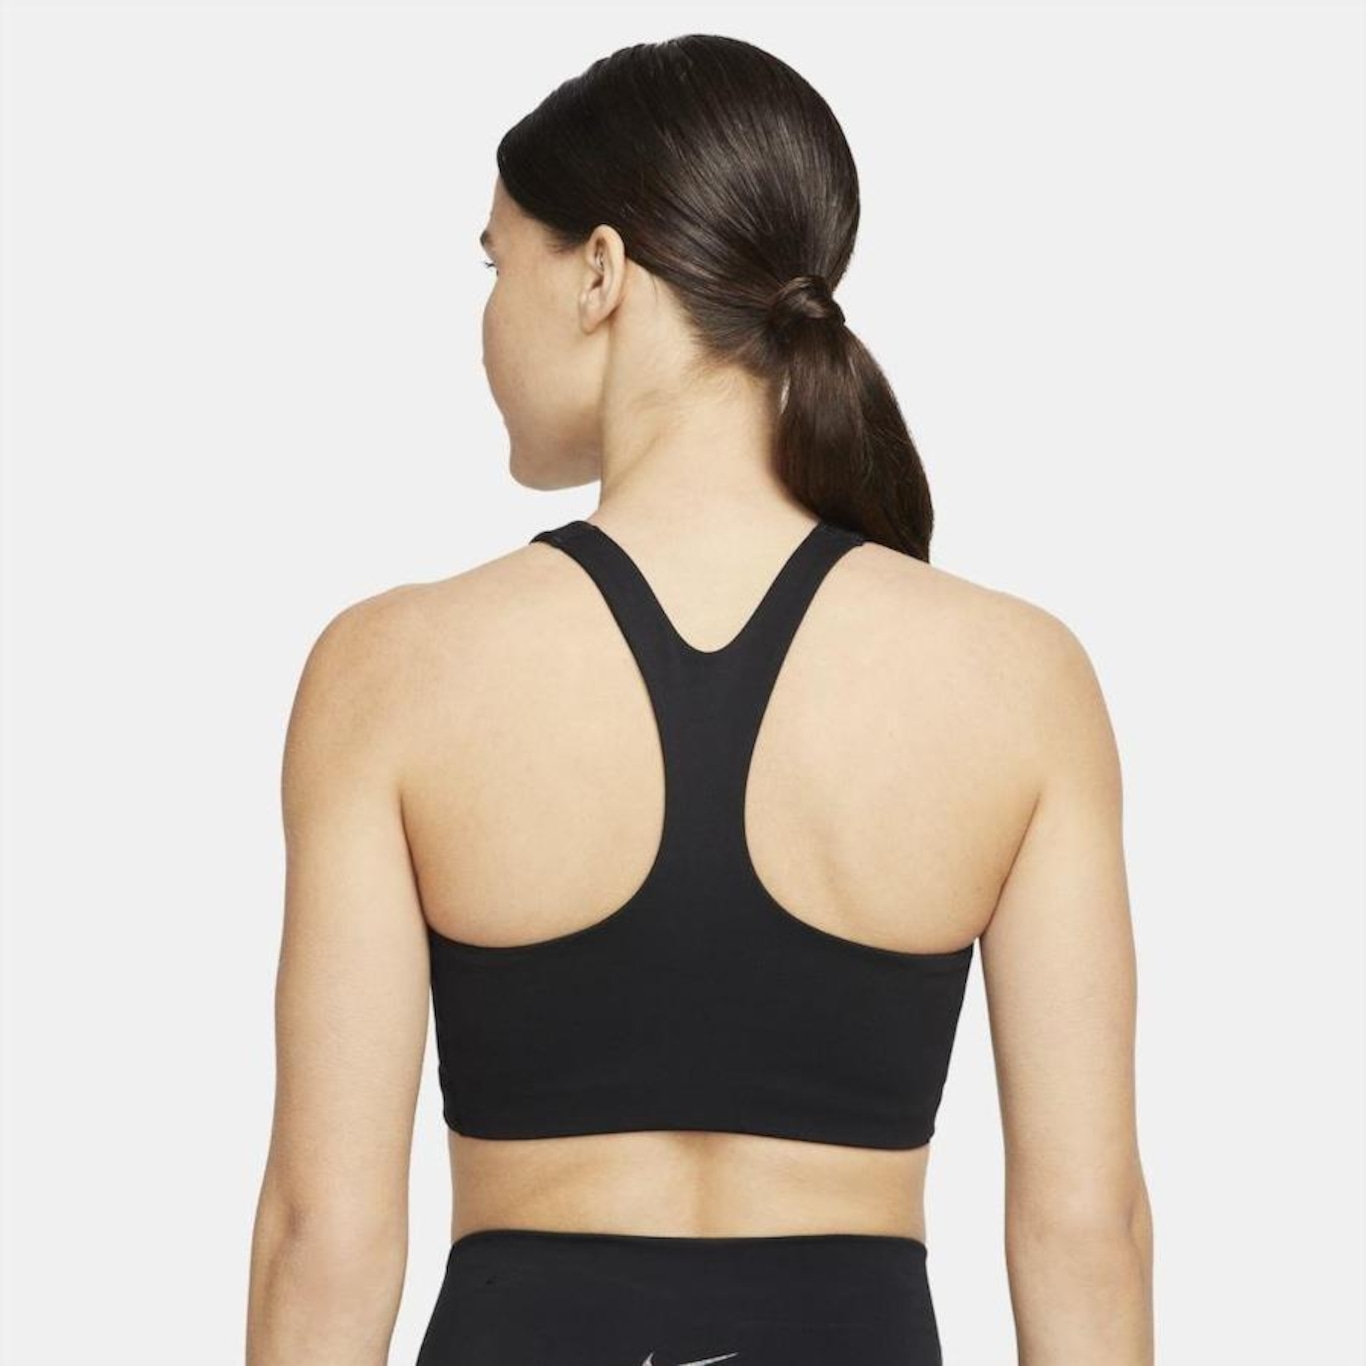 Top Nike Yoga Preto - Compre Agora